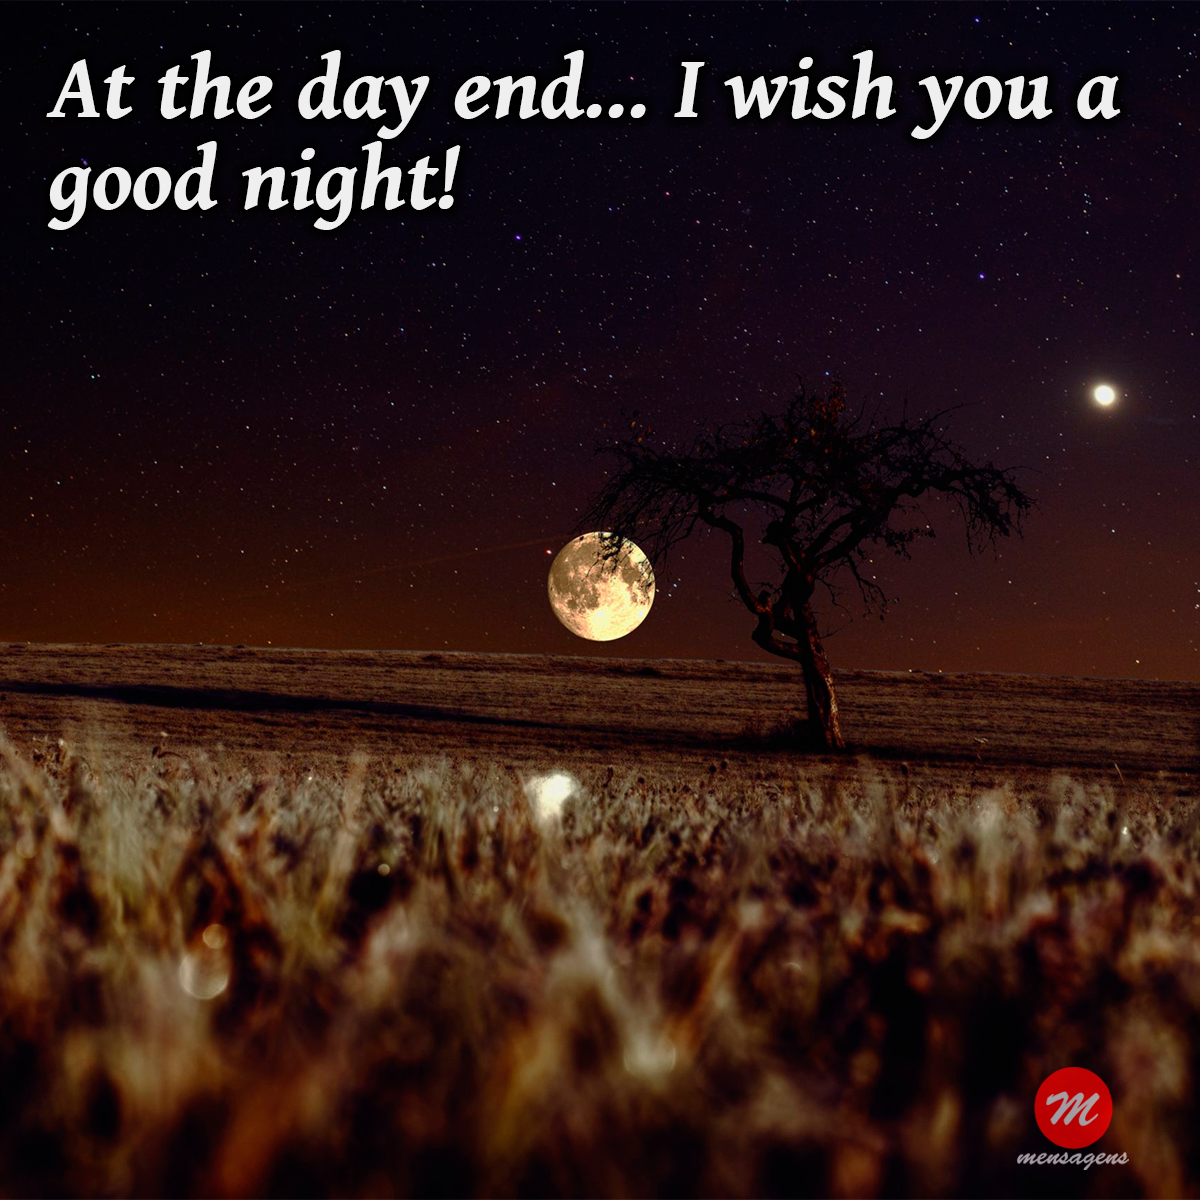 mensagem de boa noite em ingles - At the day end... I wish you a good night!